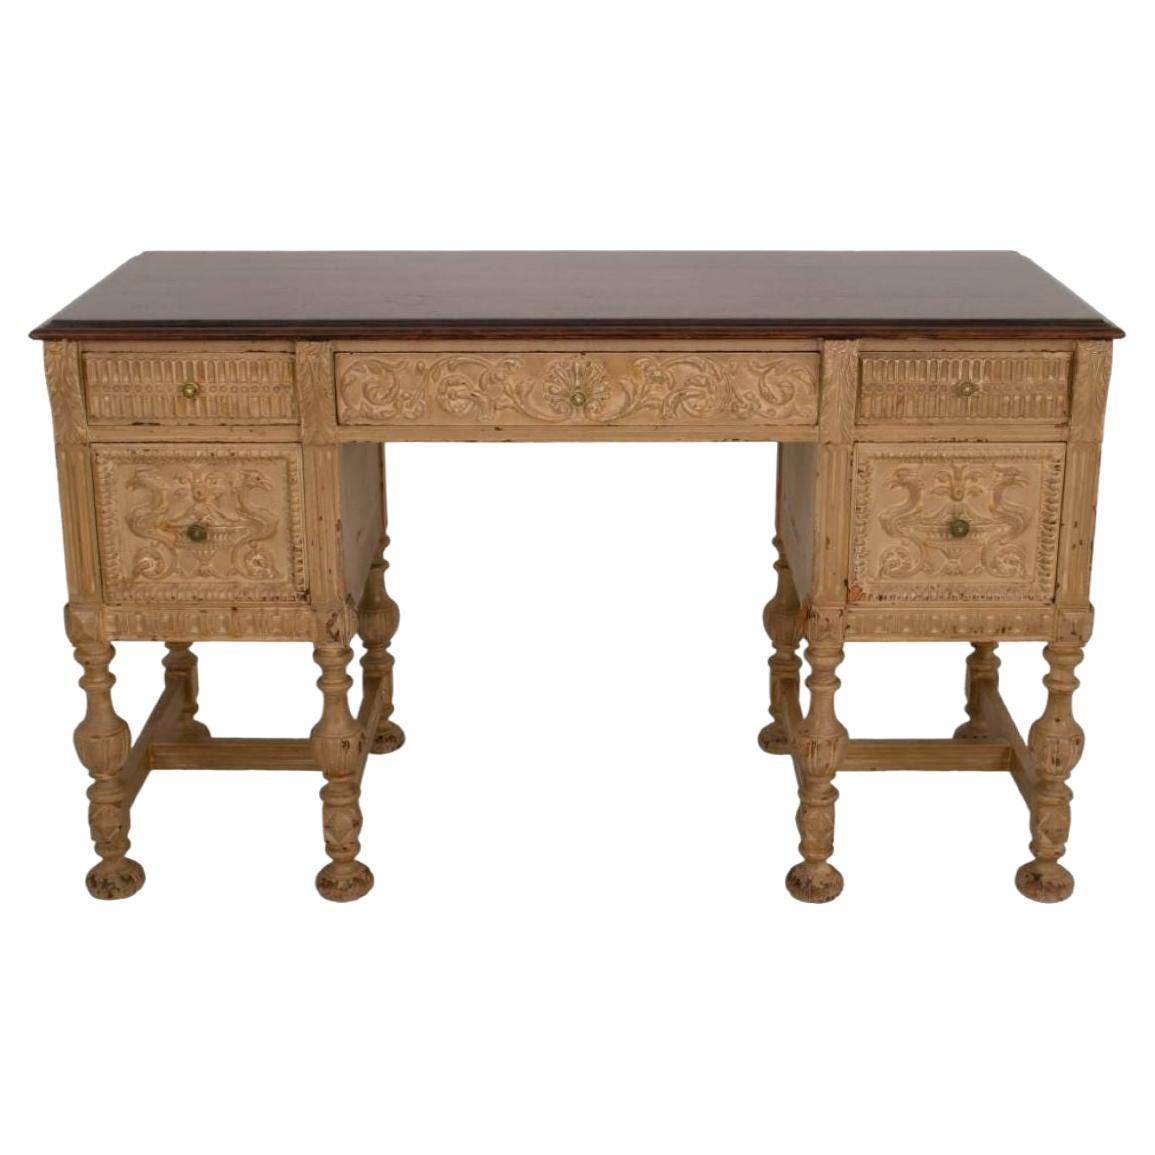 Renaissance Revival Kneehole Desk For Sale